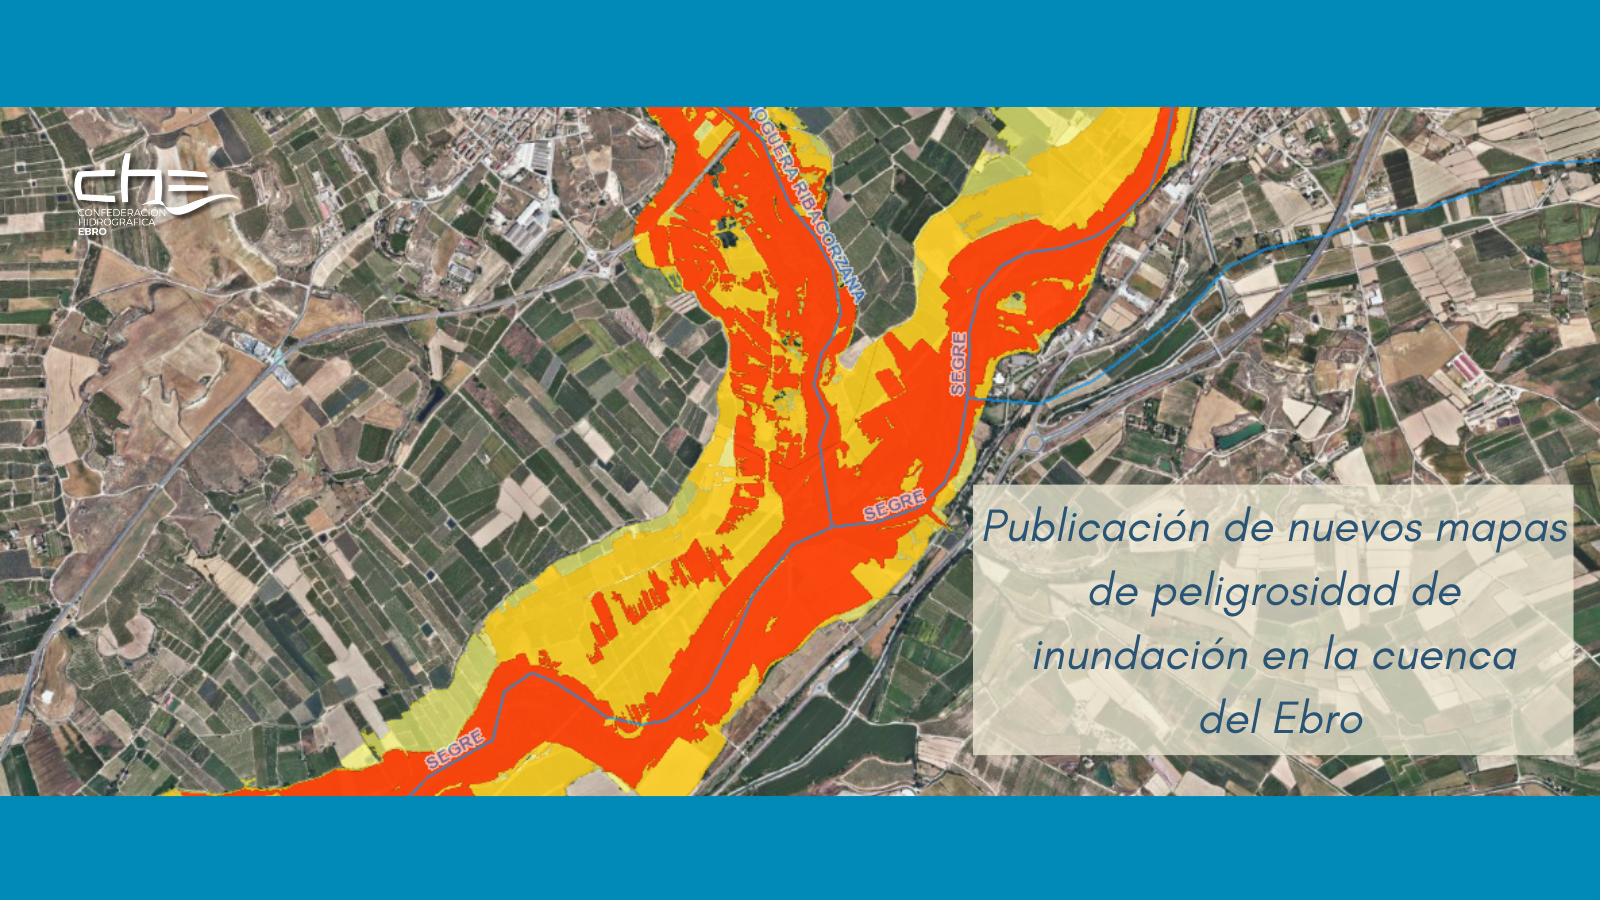 Imagen noticia - Publicación de nuevos mapas de peligrosidad de inundación en la cuenca del Ebro